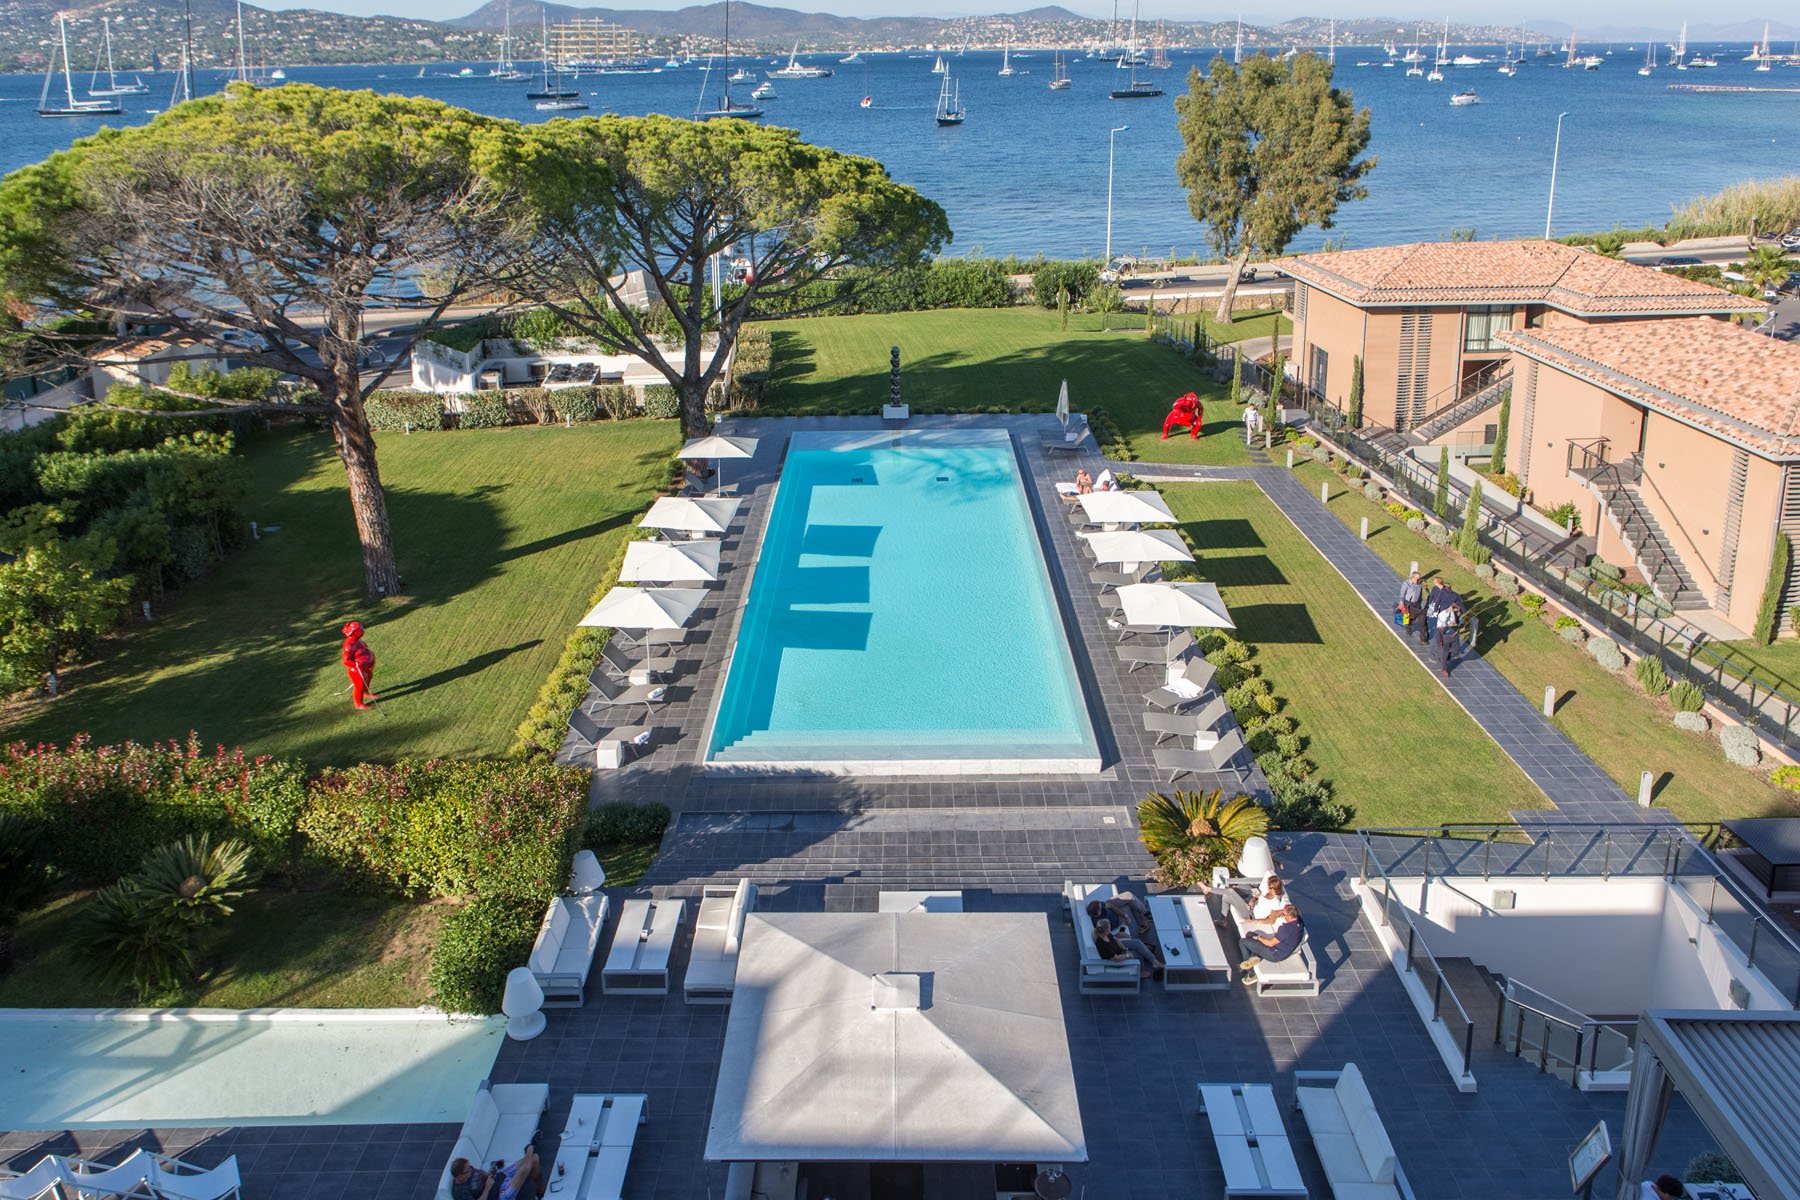 Piscine XL - Kube Hotel Saint-Tropez - Sud de la France